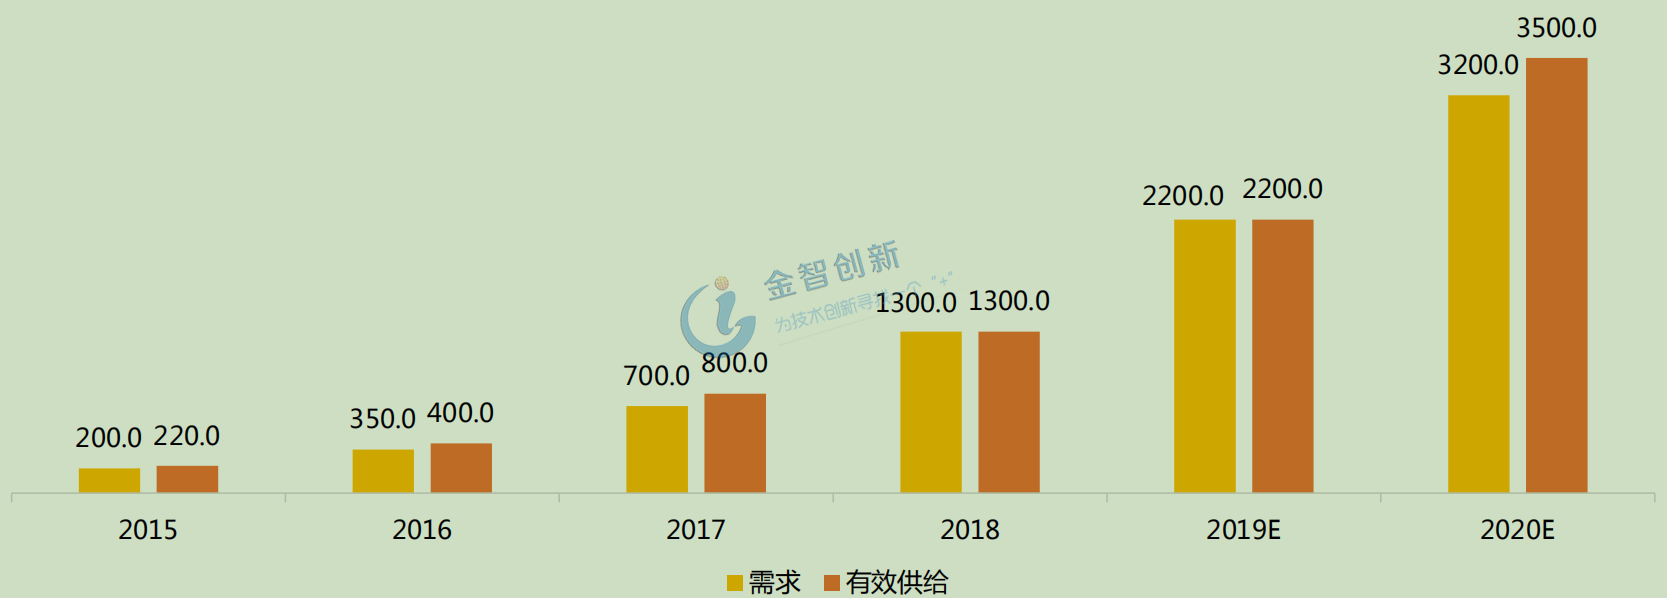 2012-2020年中国智能门锁需求与有效供给数量(万套)